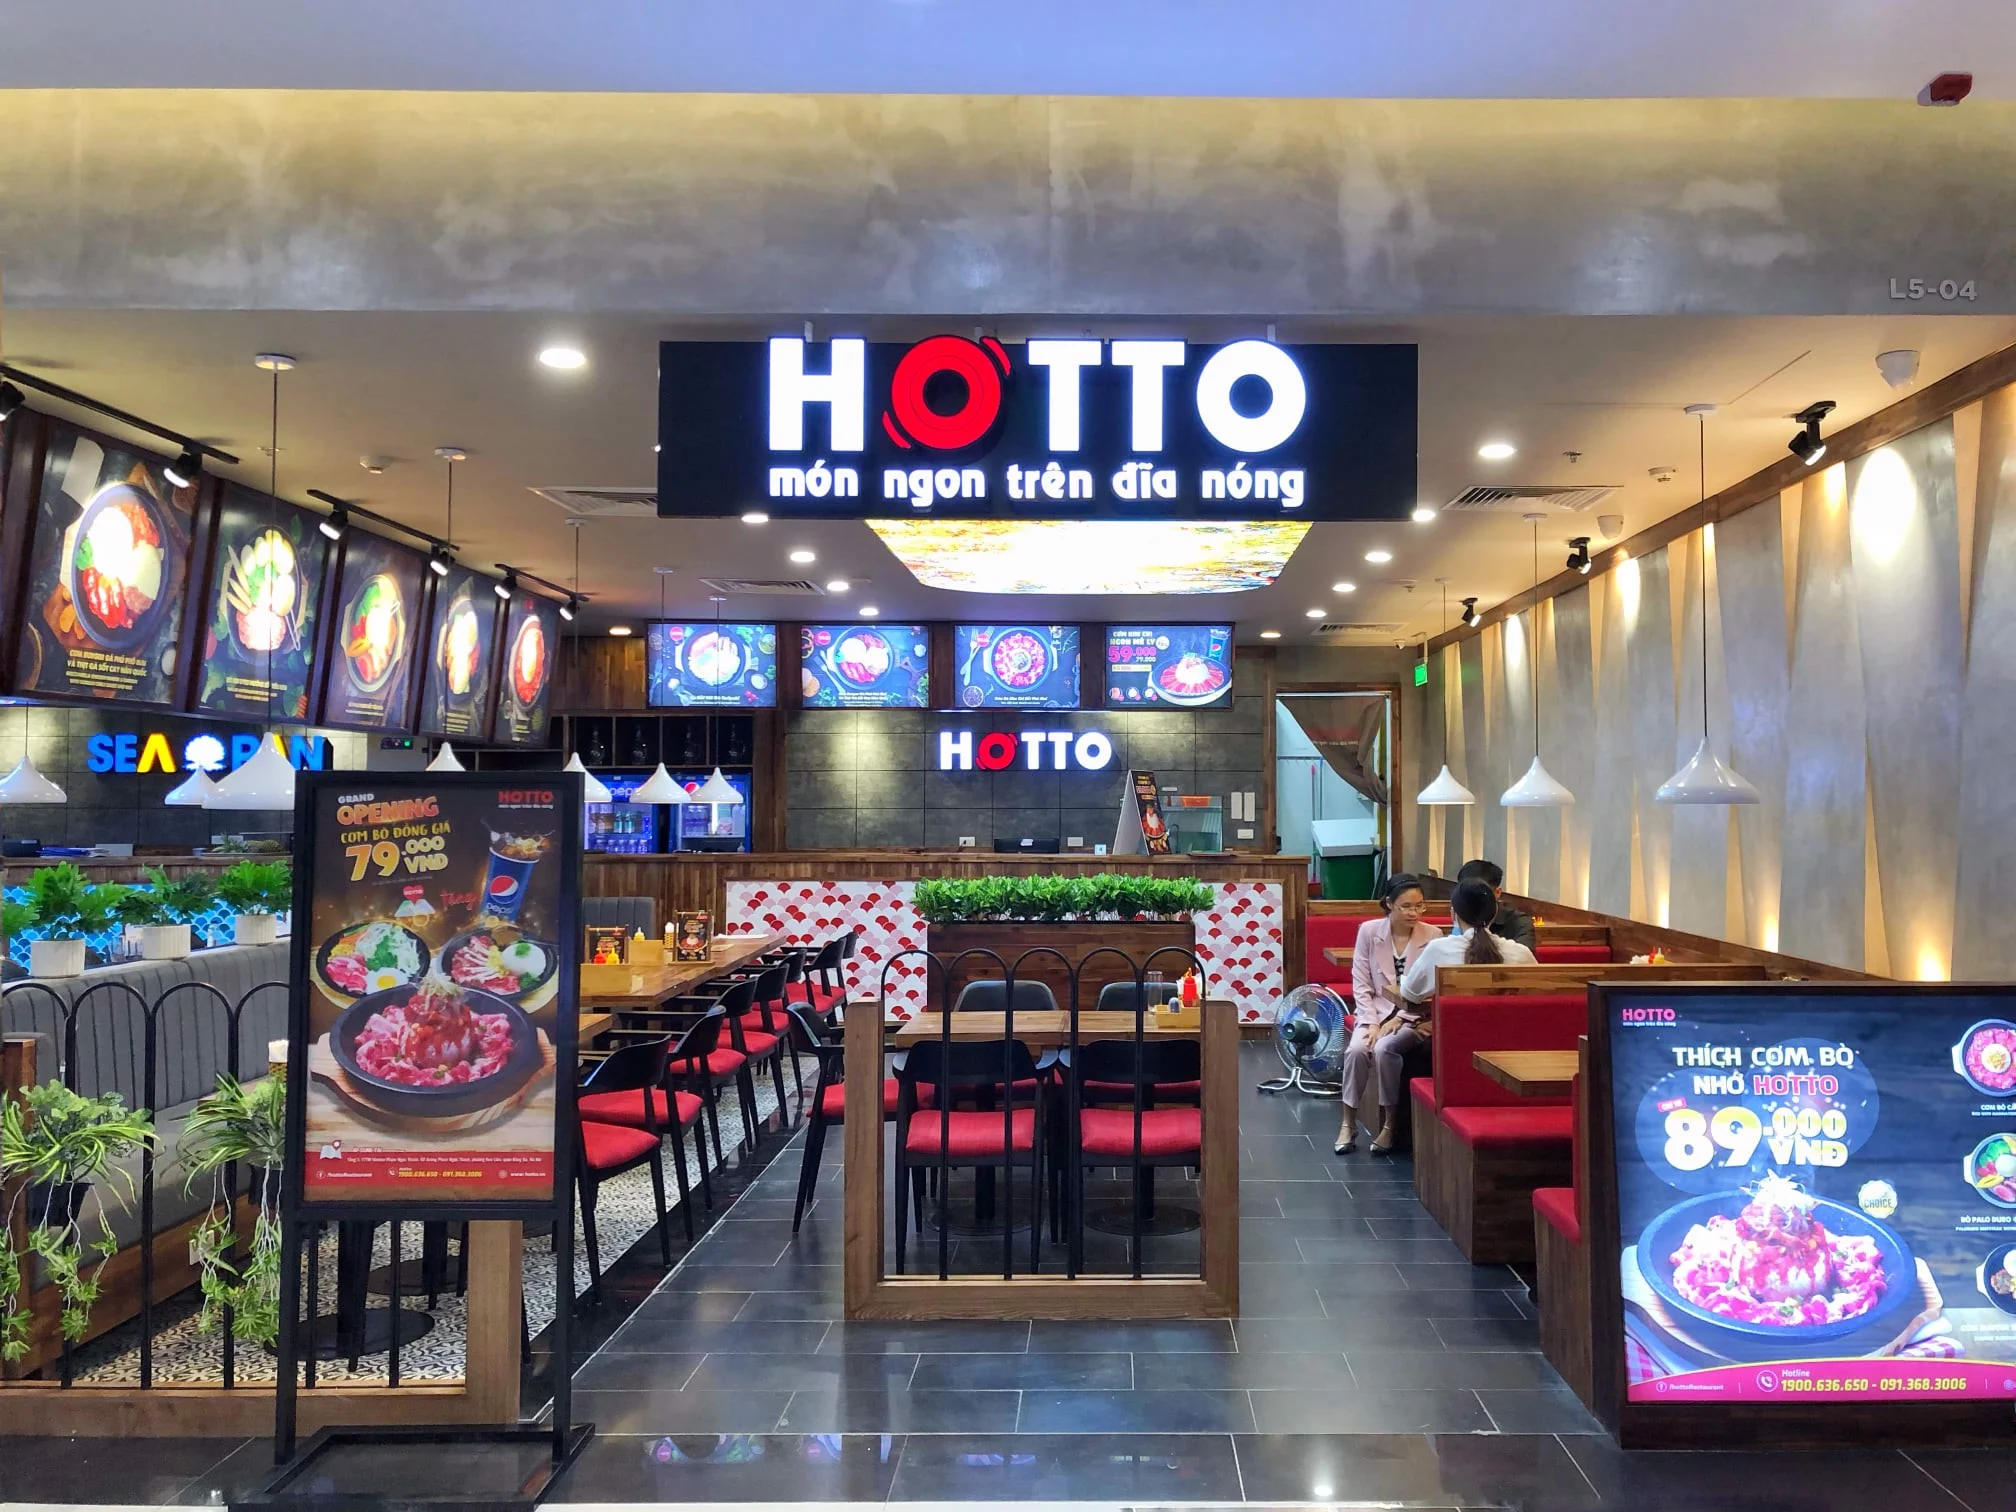 Không gian giảo cửa hàng Hotto với biển khơi hiệu Hotto khoản ngon bên trên dĩa nóng